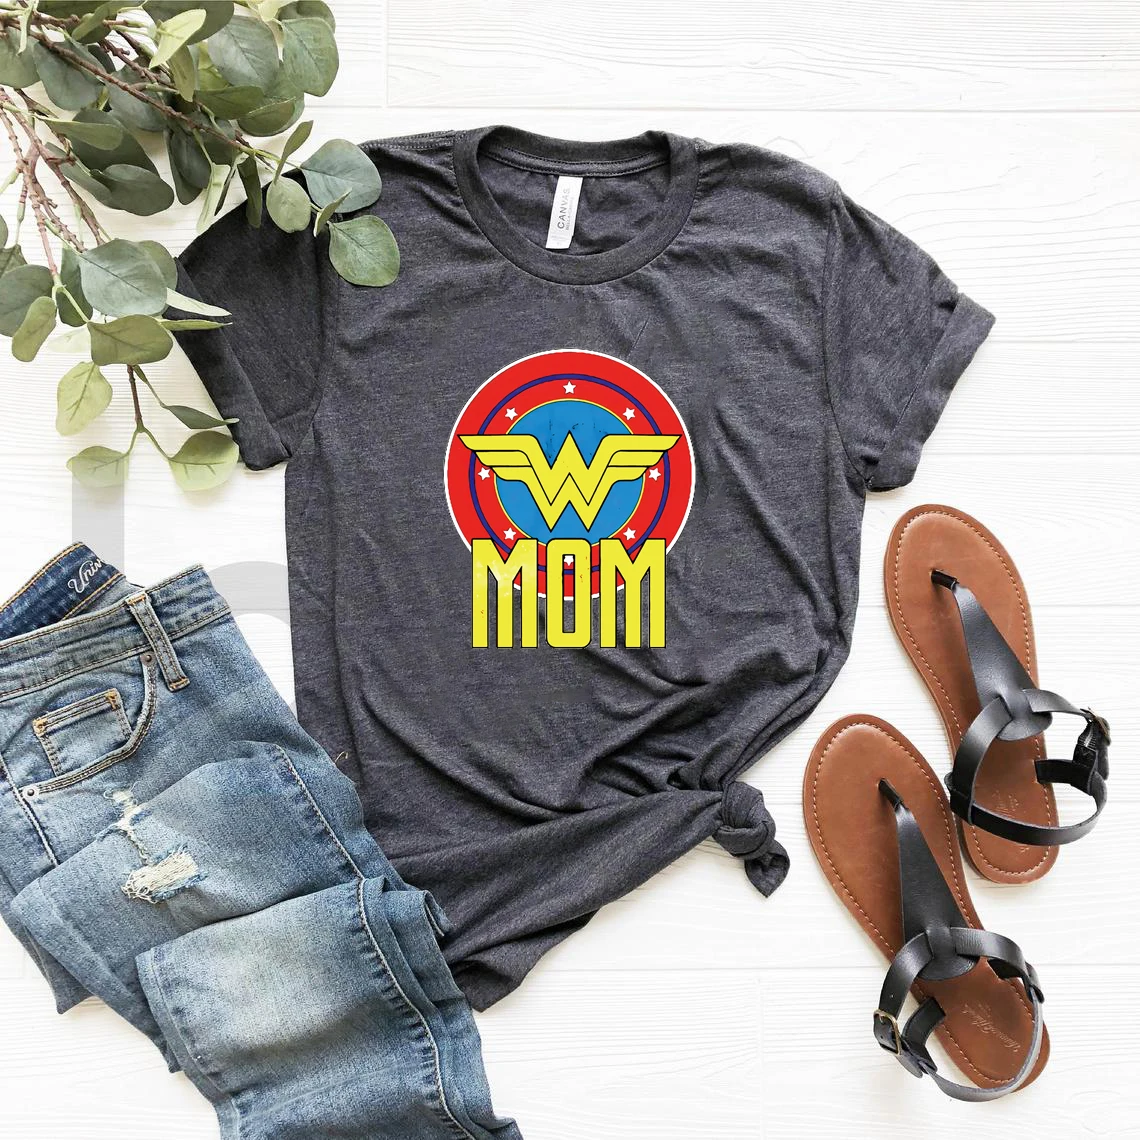 Футболка чудо-Мама футболка в стиле супергероев чудо-женщины рубашки для мамы